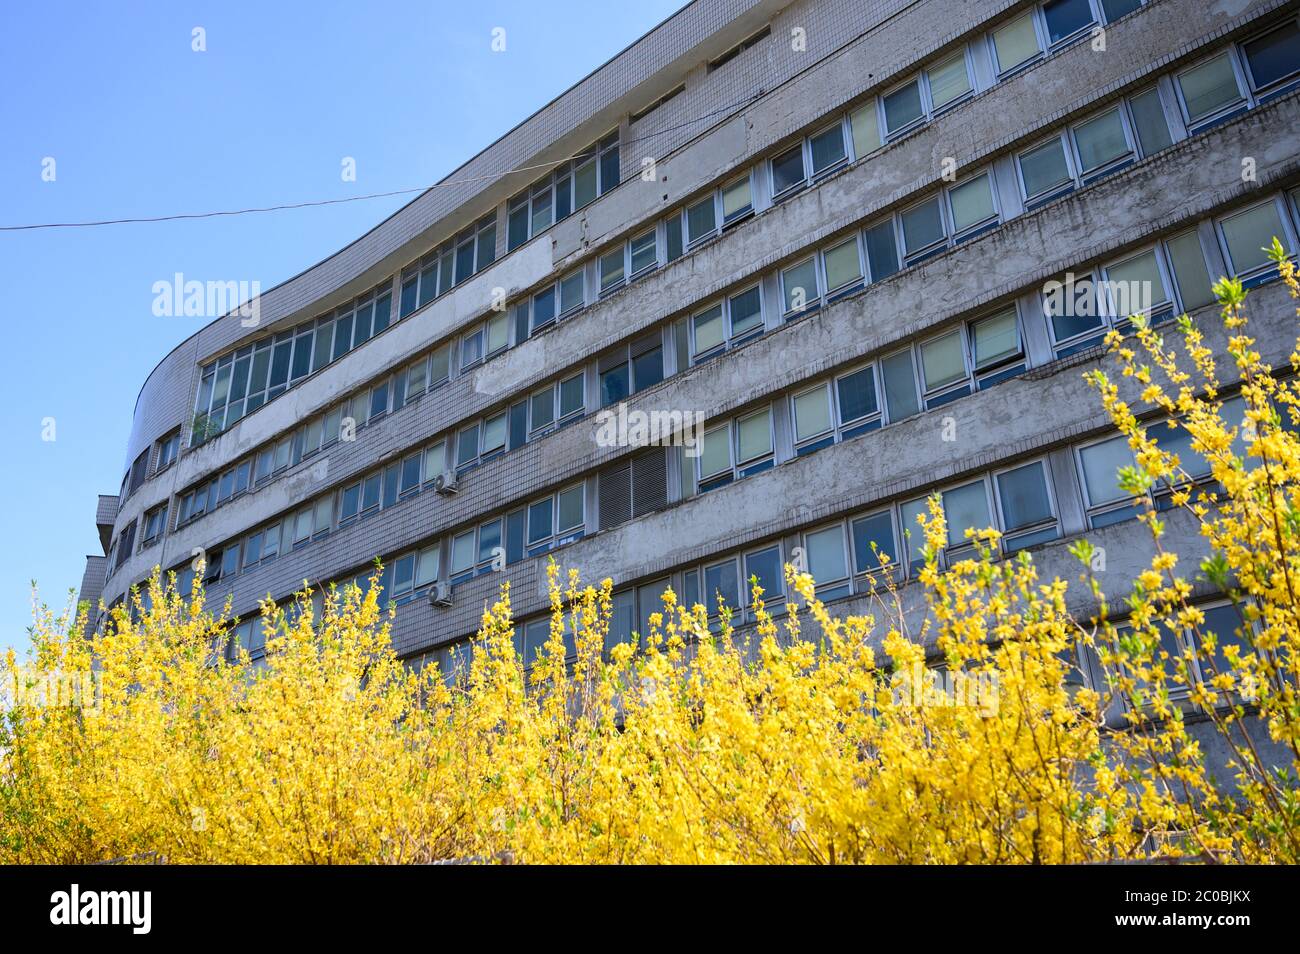 El Hospital Kramare, Departamento de Enfermedades Infecciosas y Medicina geográfica. Bratislava, Eslovaquia. 2019/10/18. Foto de stock